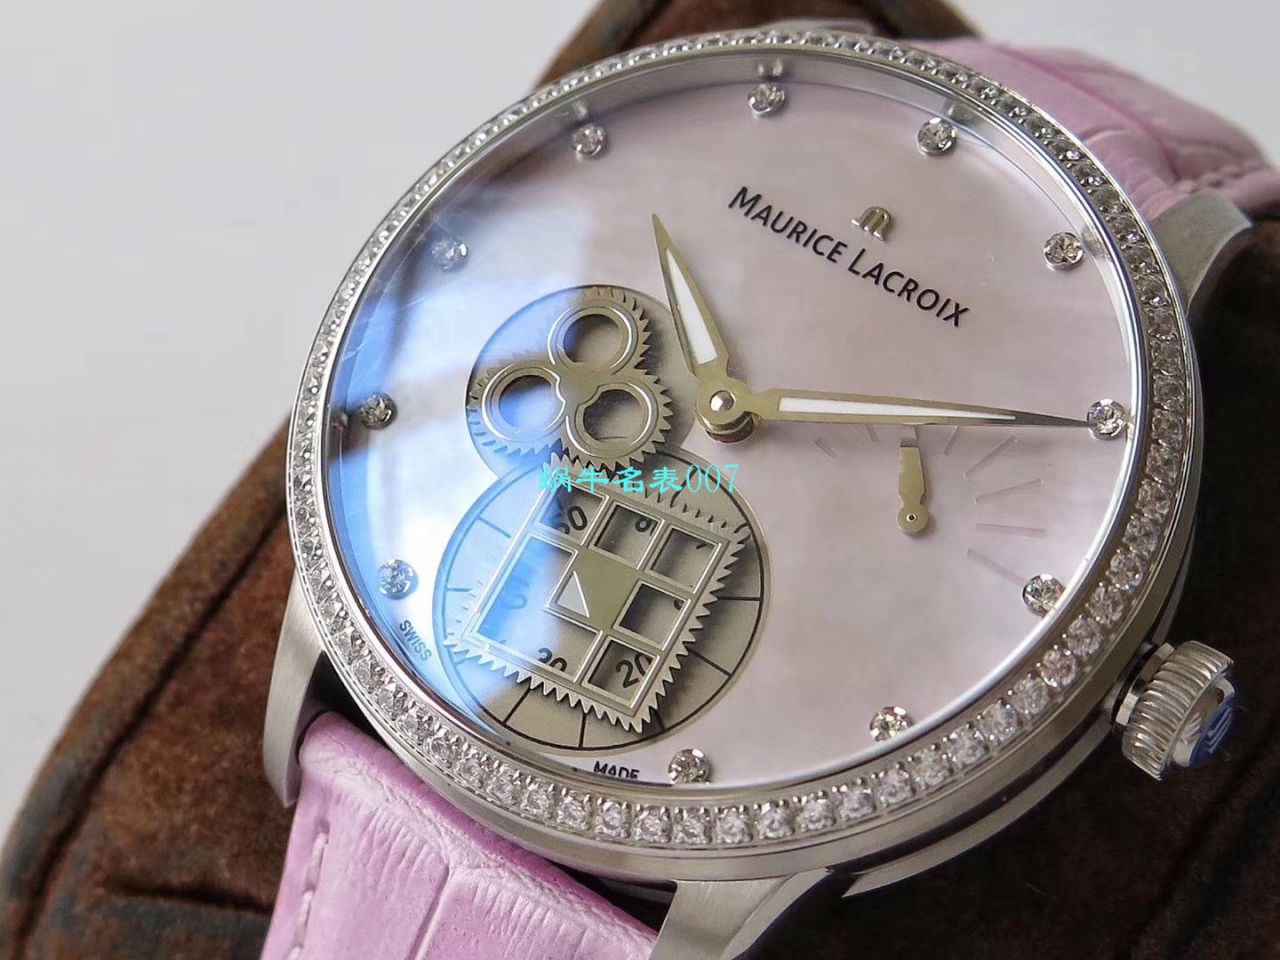 【视频评测AM厂Maurice Lacroix复刻手表】艾美匠心系列MP7158-SD501-570腕表 / AI09